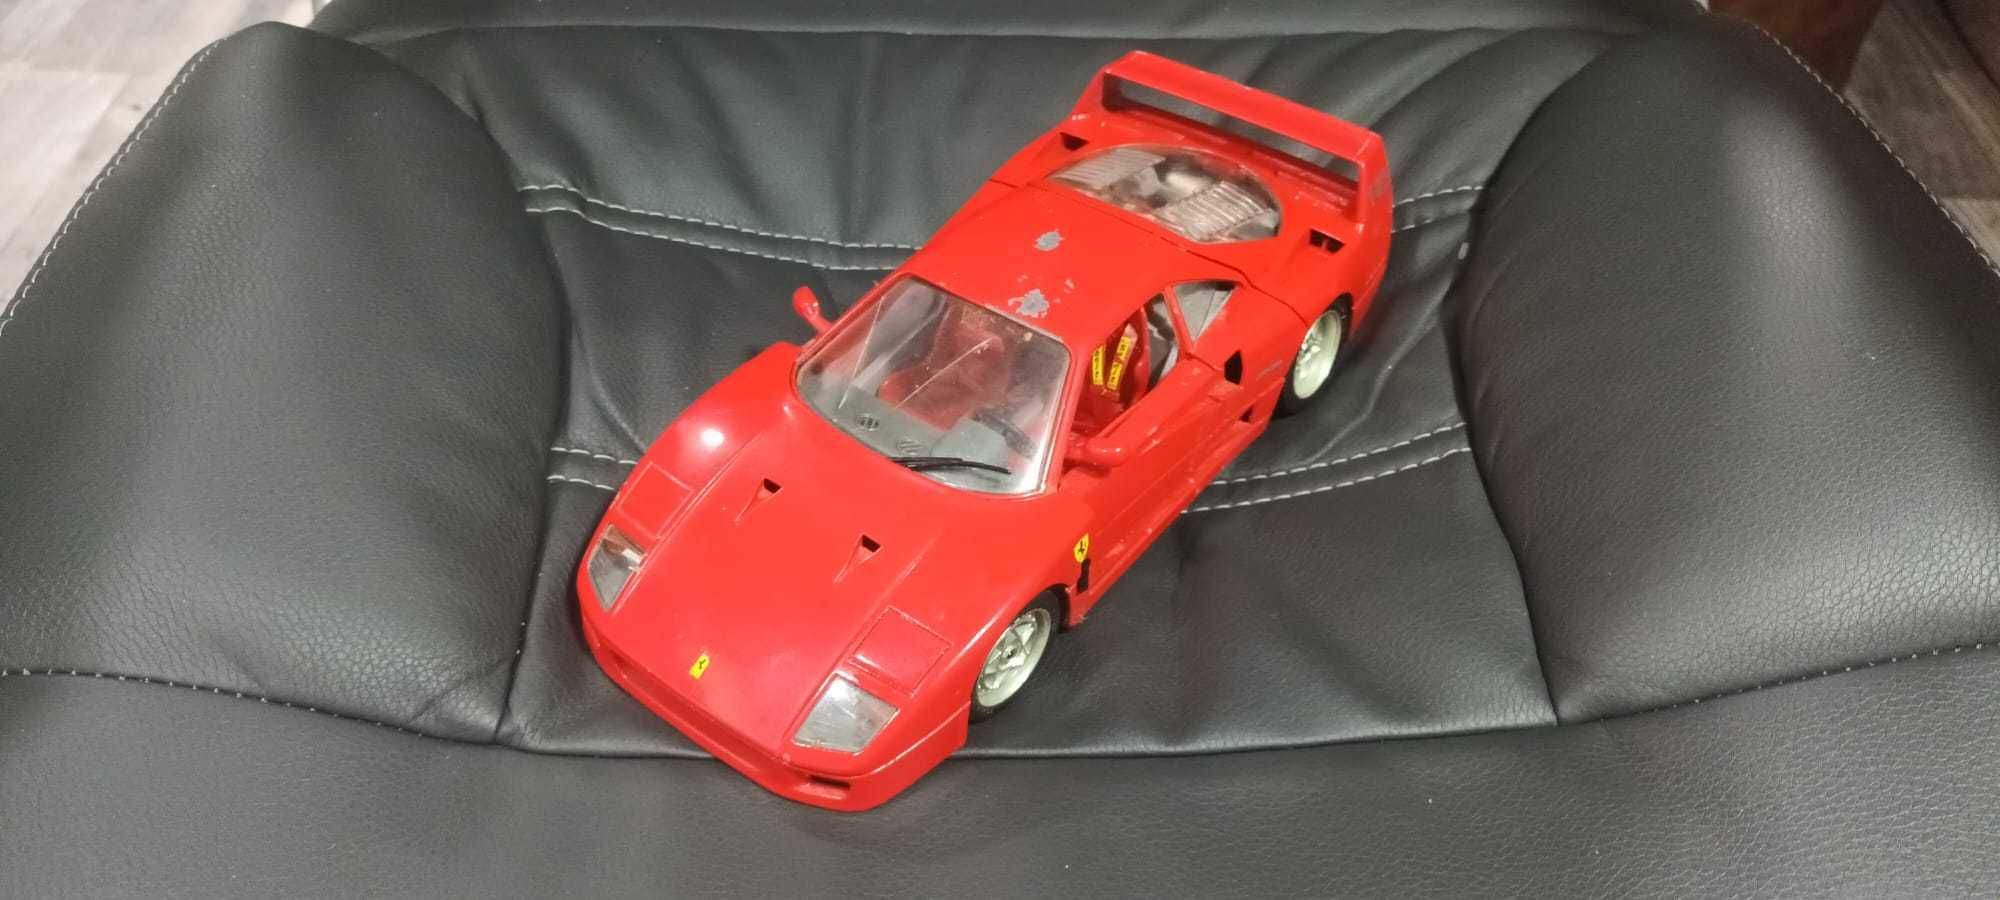 Macheta Ferrari Burago 1987 F40 1:18 metal